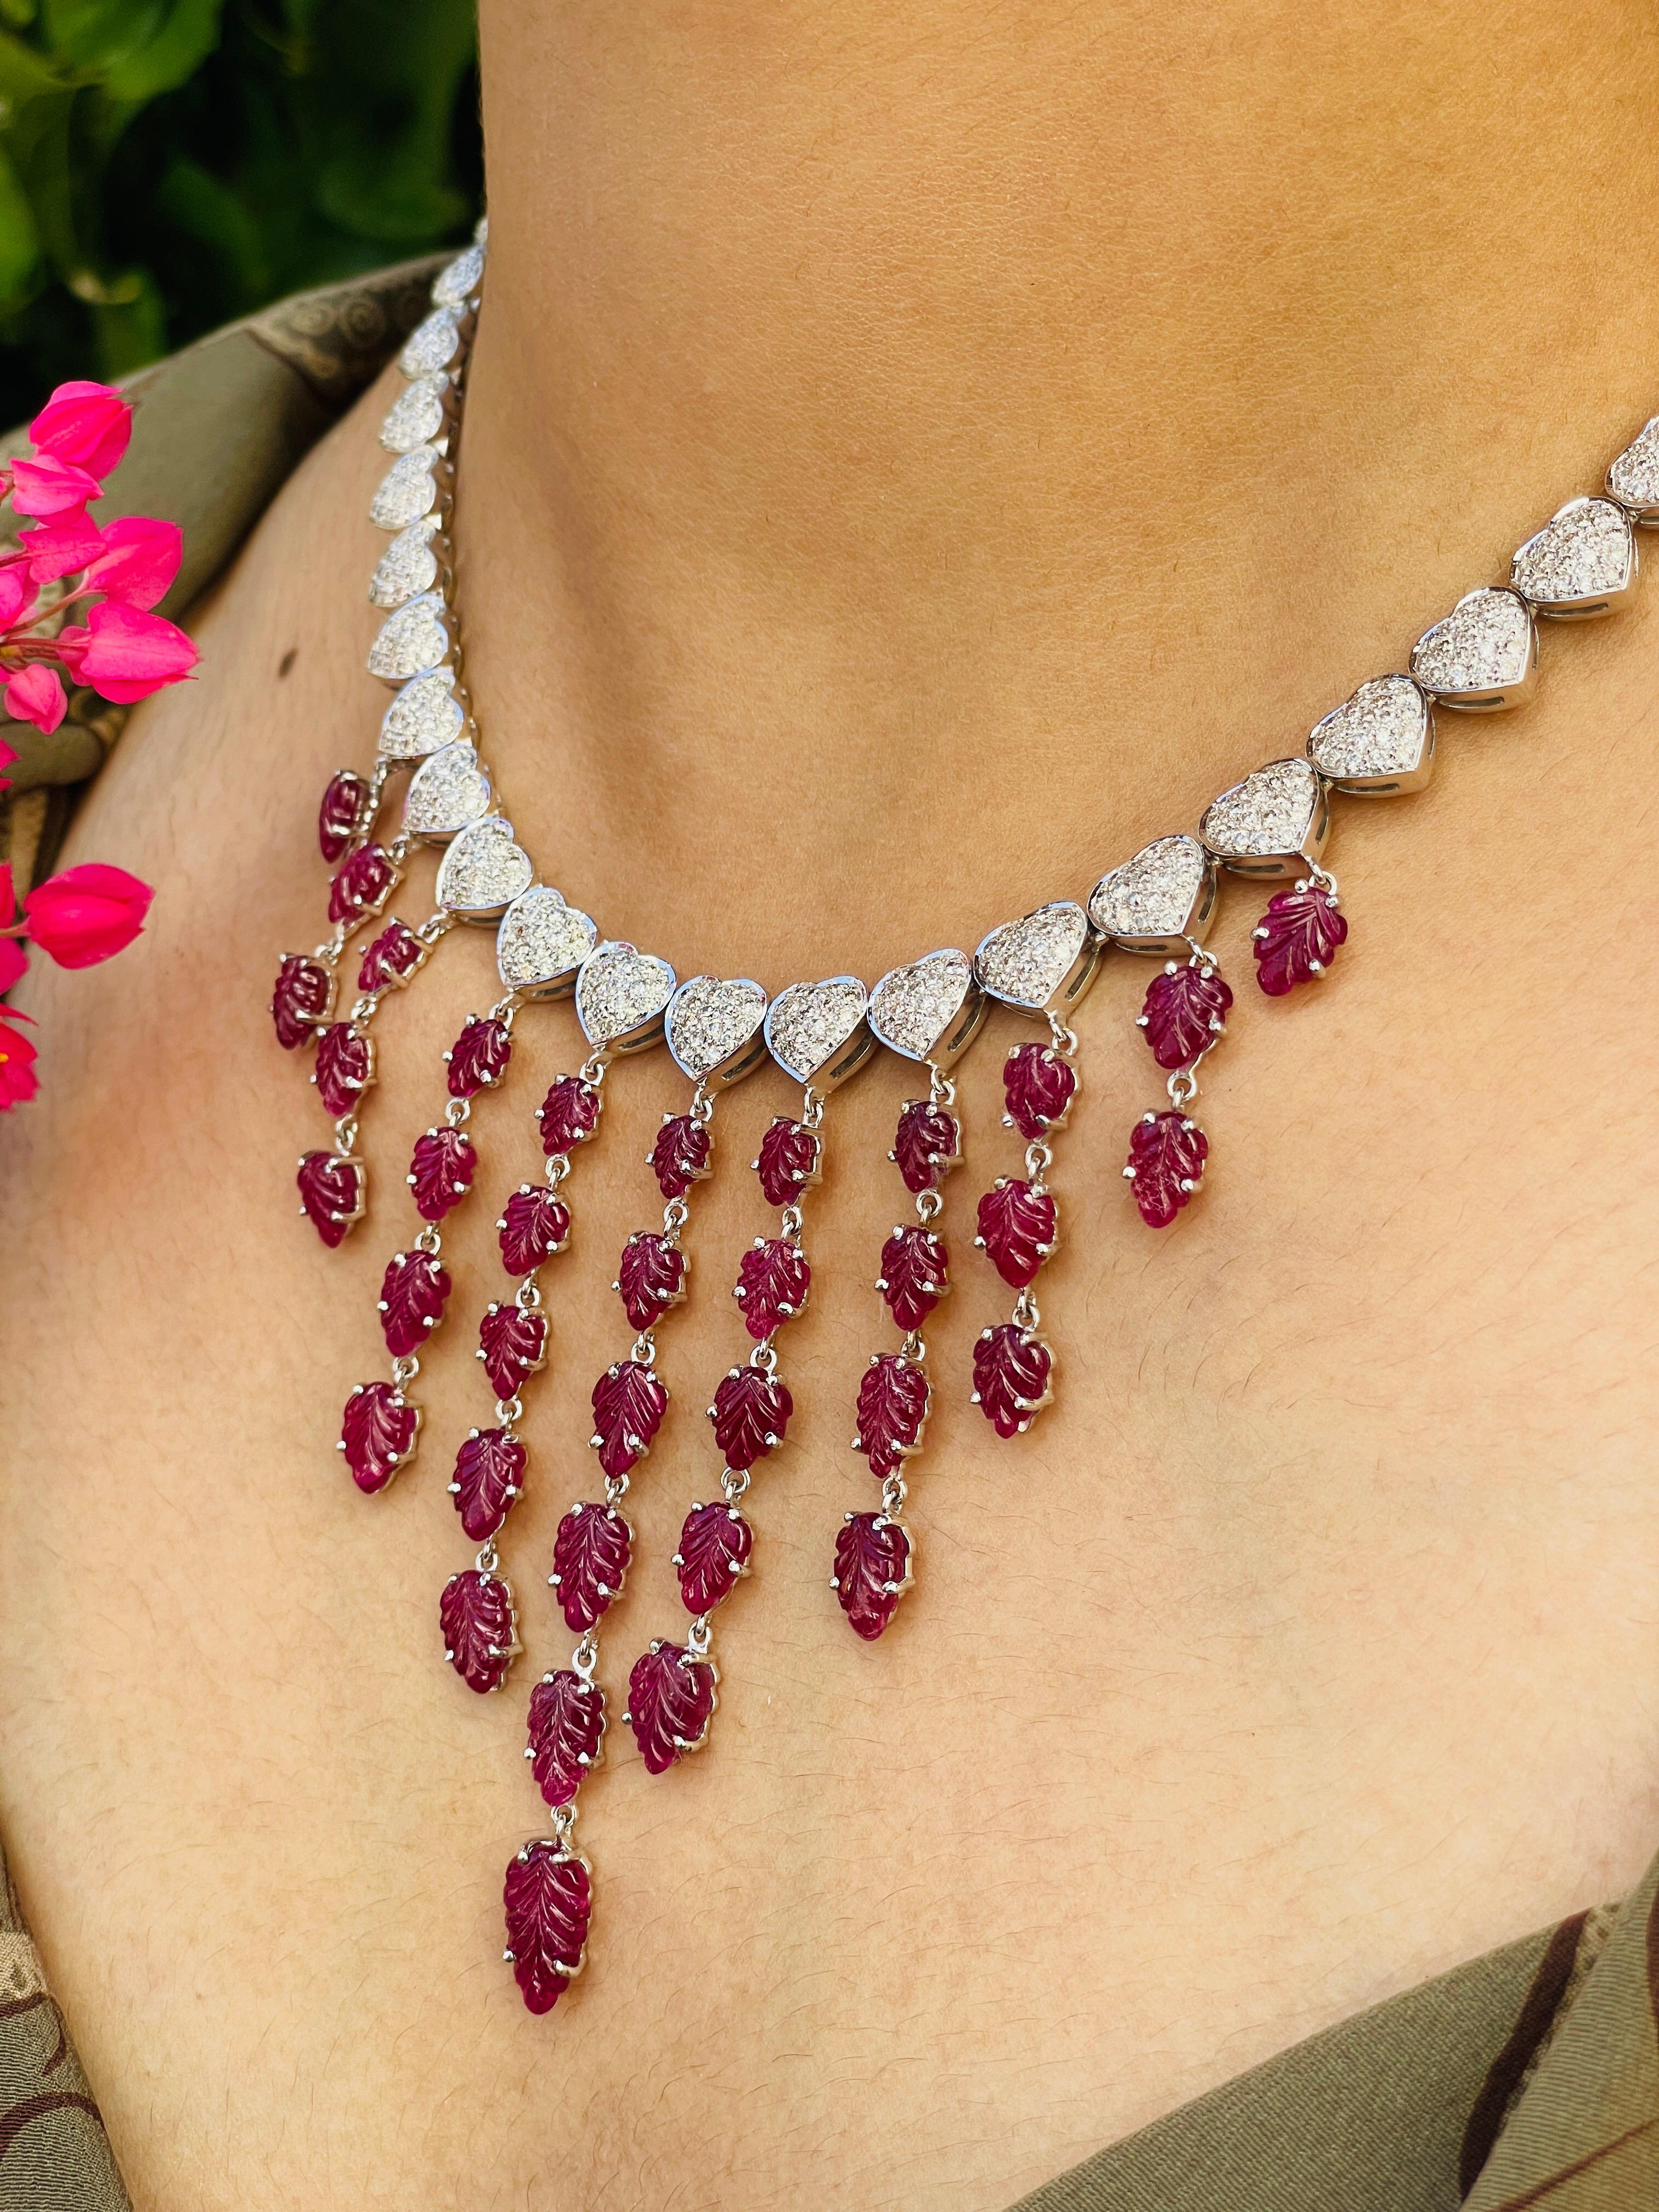 Collier de rubis en or 18 carats constellé de rubis taillés en feuilles et de diamants.
Accessoirisez votre look avec cet élégant collier de perles en rubis. Ce superbe bijou rehausse instantanément un look décontracté ou une tenue habillée.